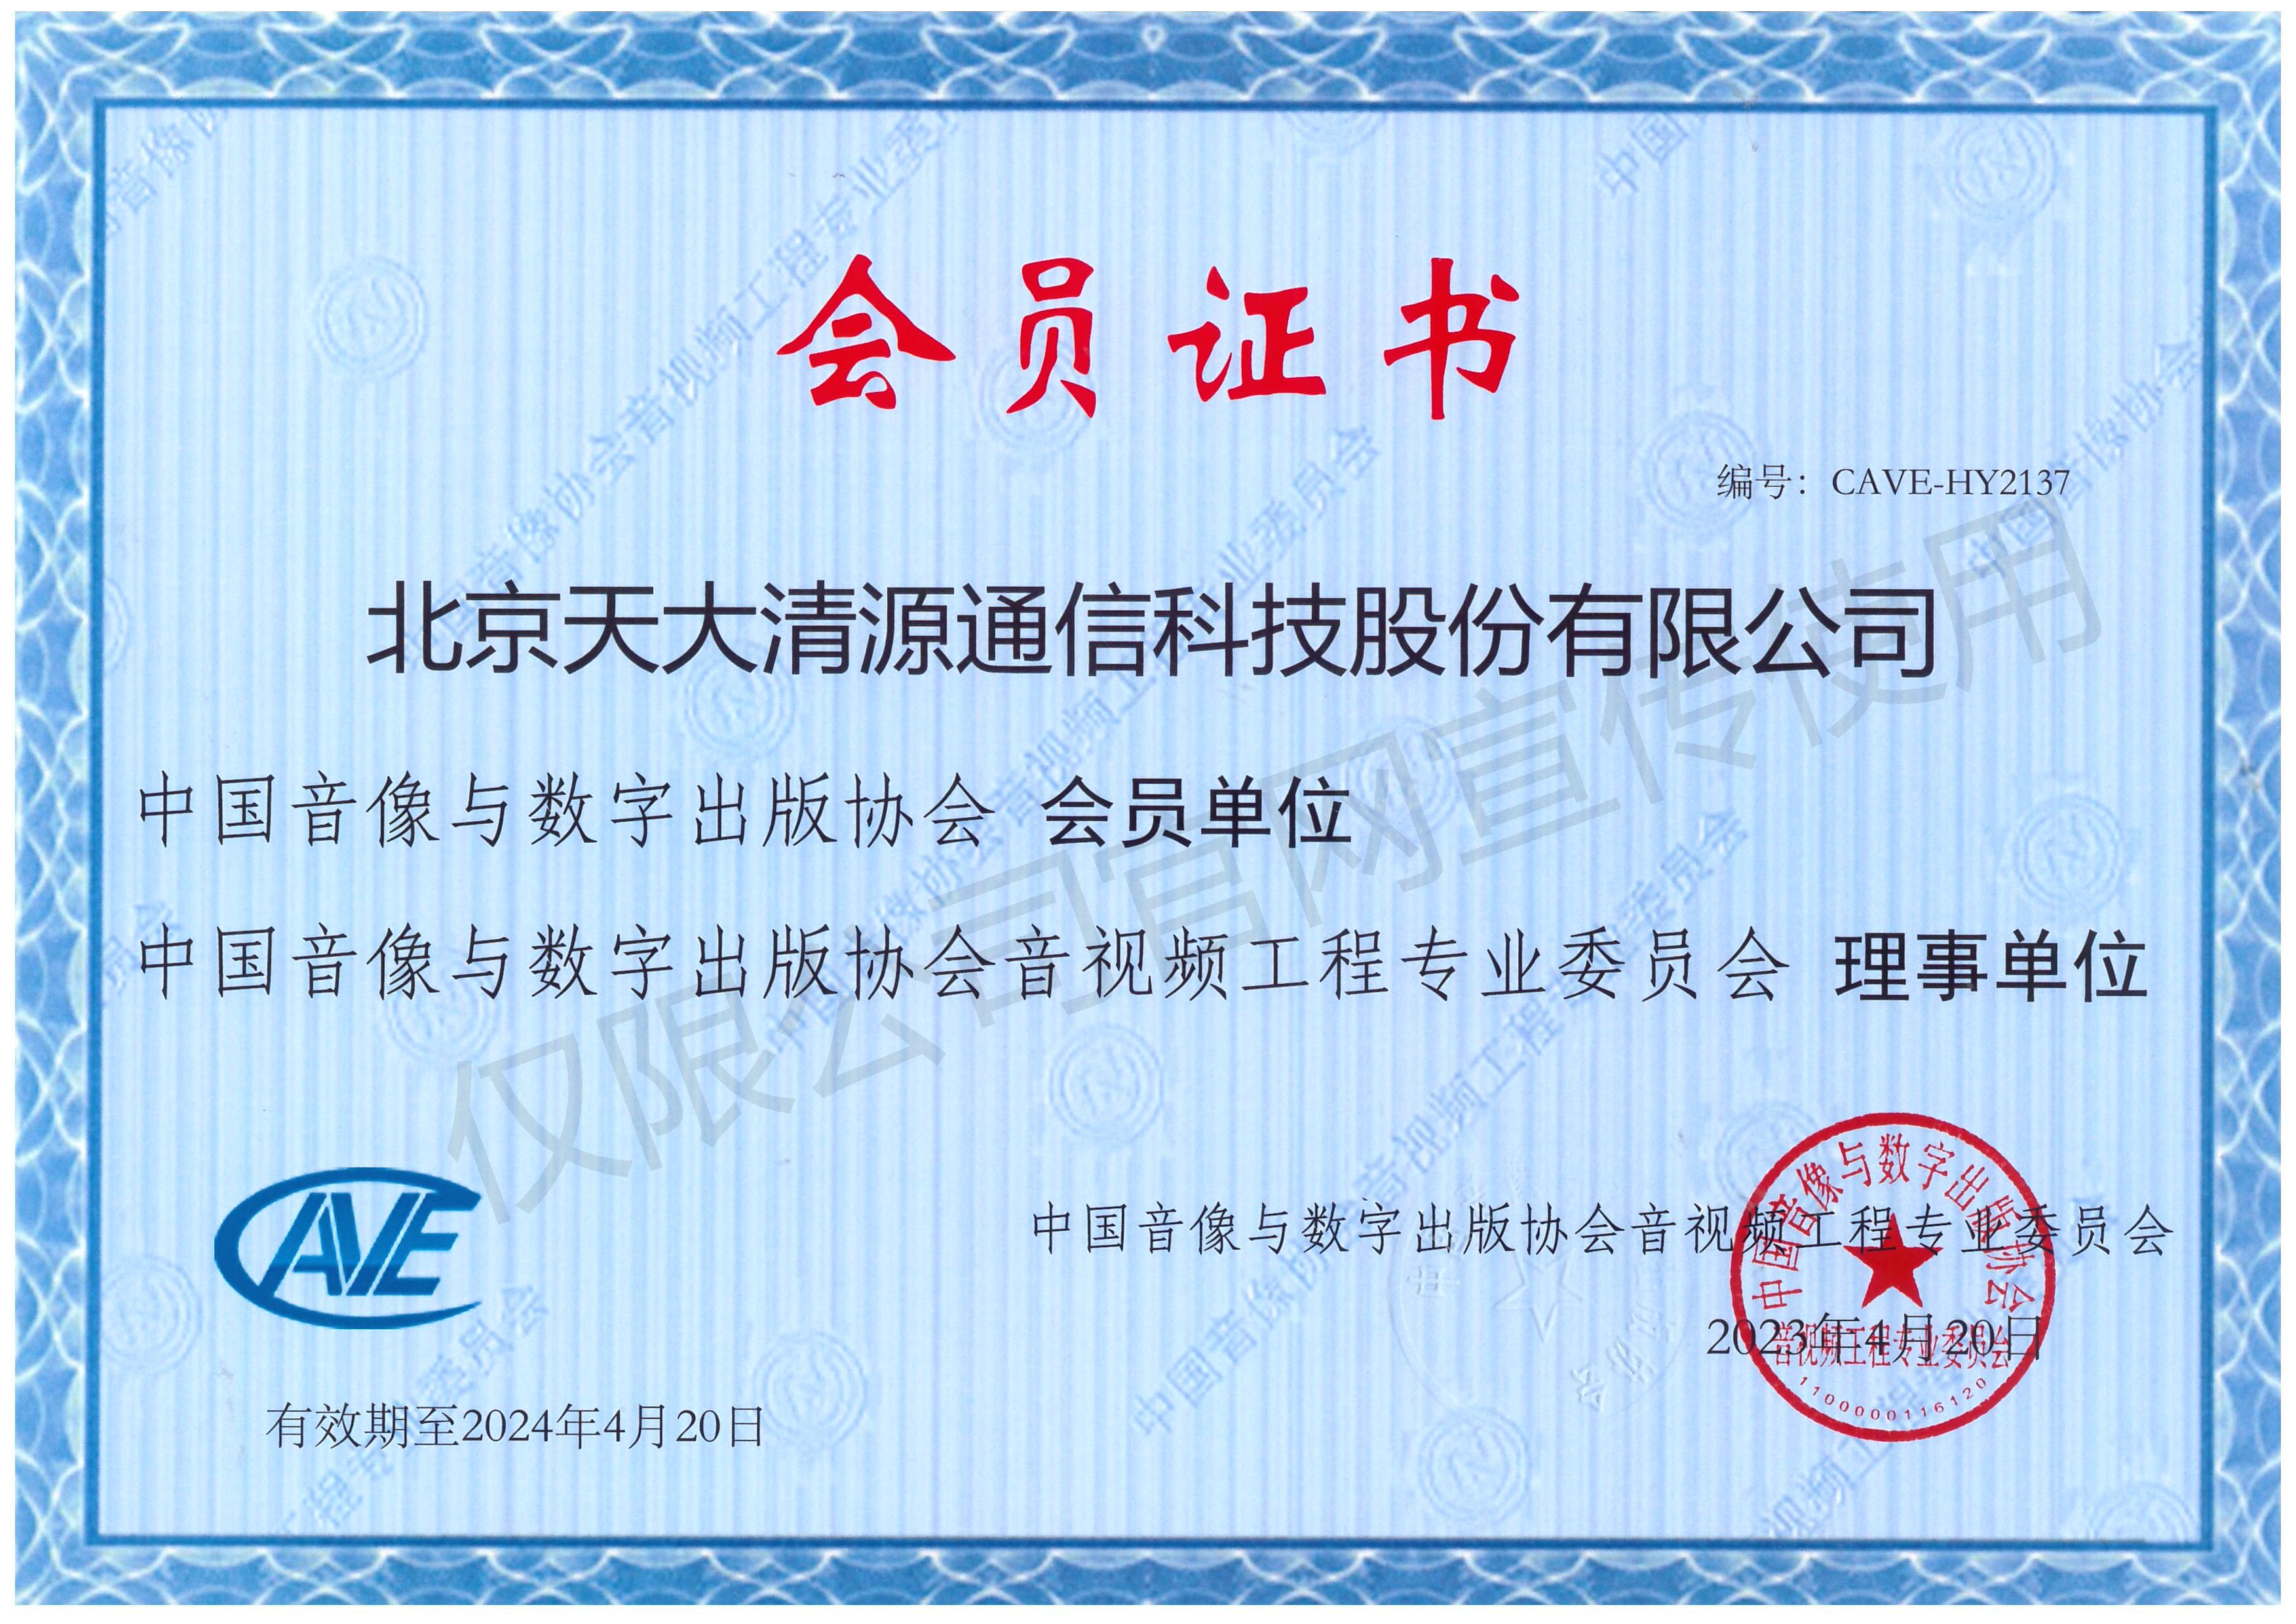 中国音像与数字出版协会会员单位证书_北京天大清源通信科技股份有限公司